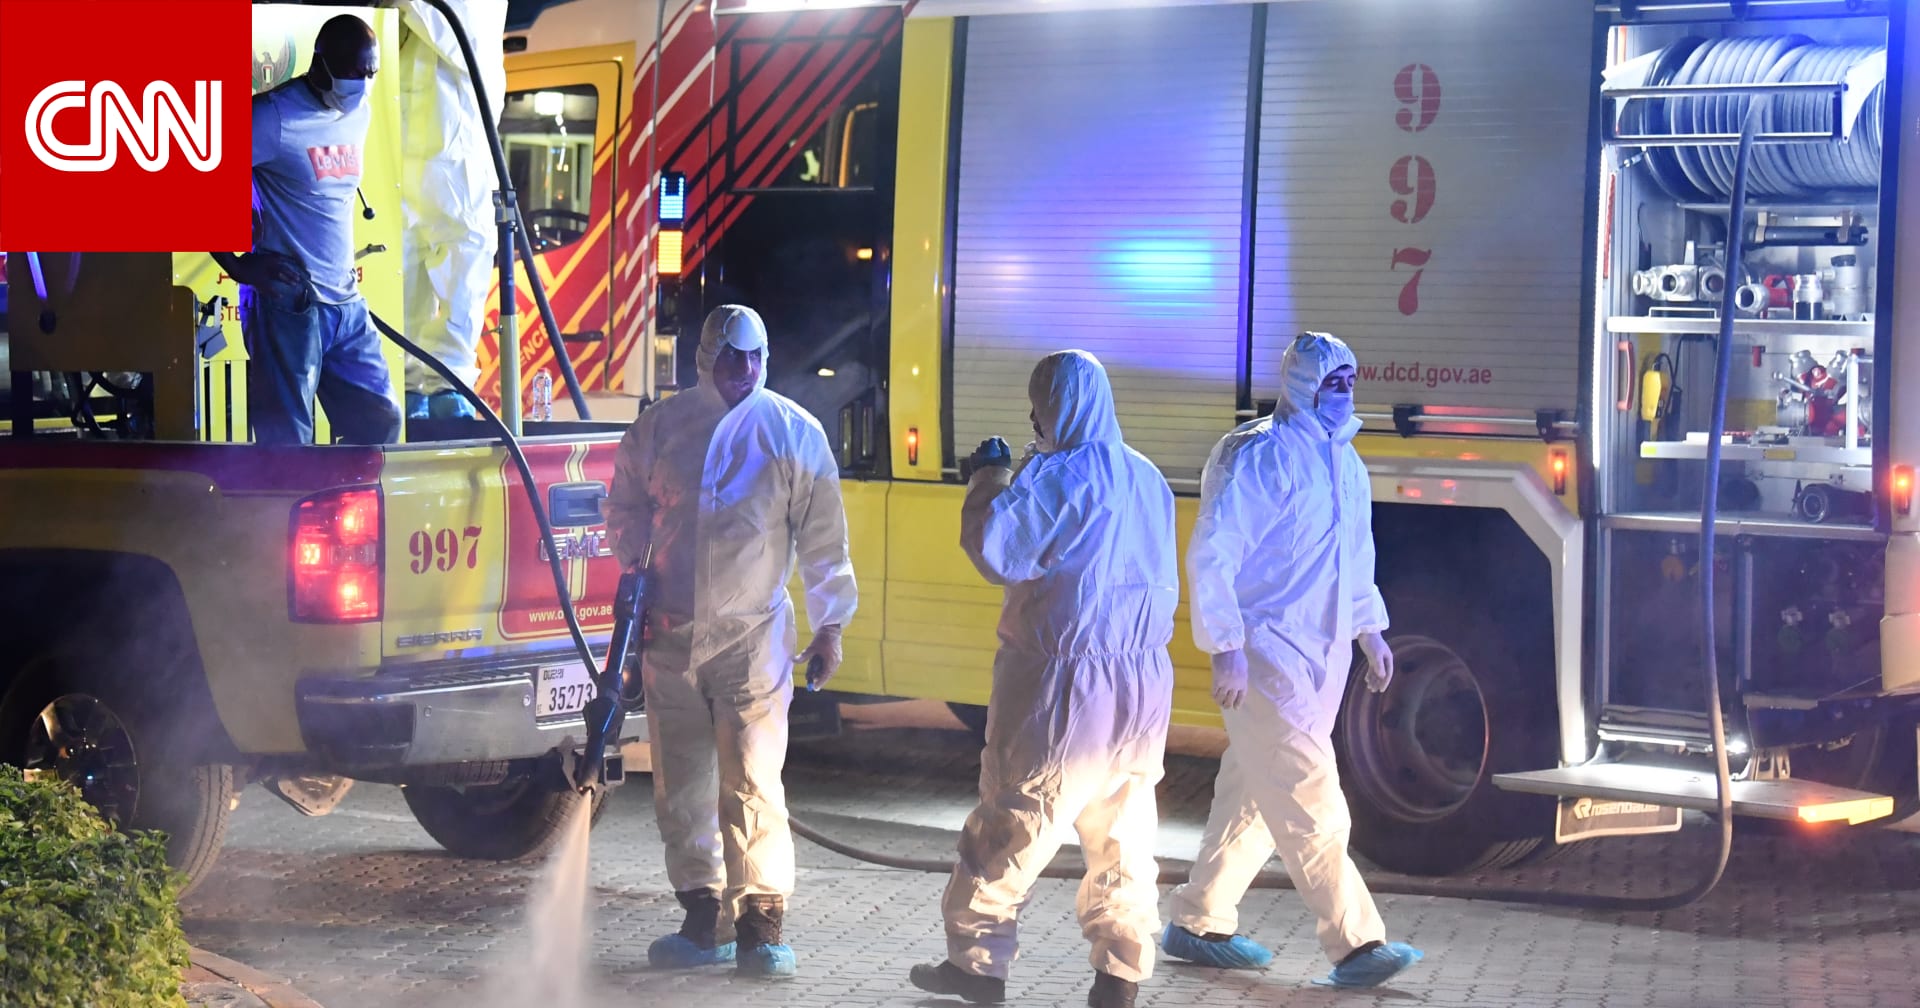 الإمارات: لا صحة للشائعات حول عدد إصابات كورونا.. ومنع الحركة تمامًا بأحد أحياء دبي - CNN Arabic